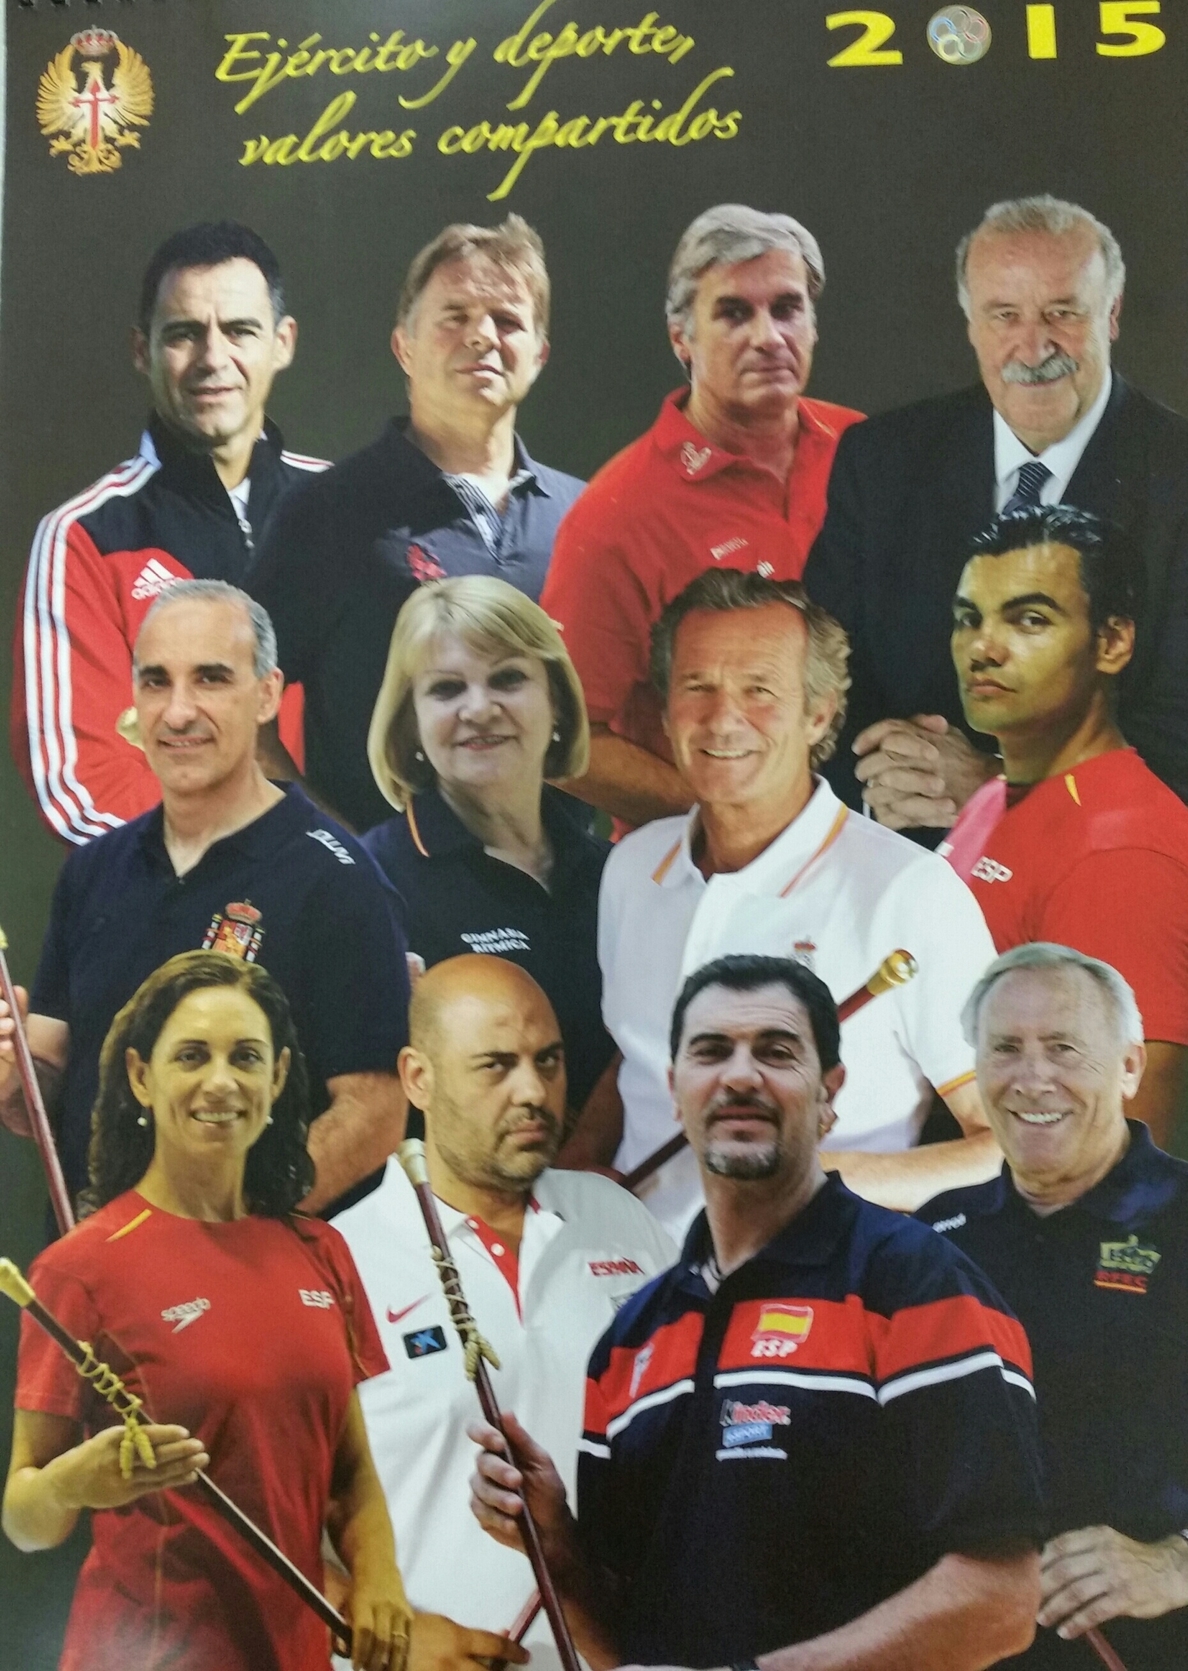 Del Bosque y otros seleccionadores españoles, protagonistas del calendario del Ejército de Tierra para 2015